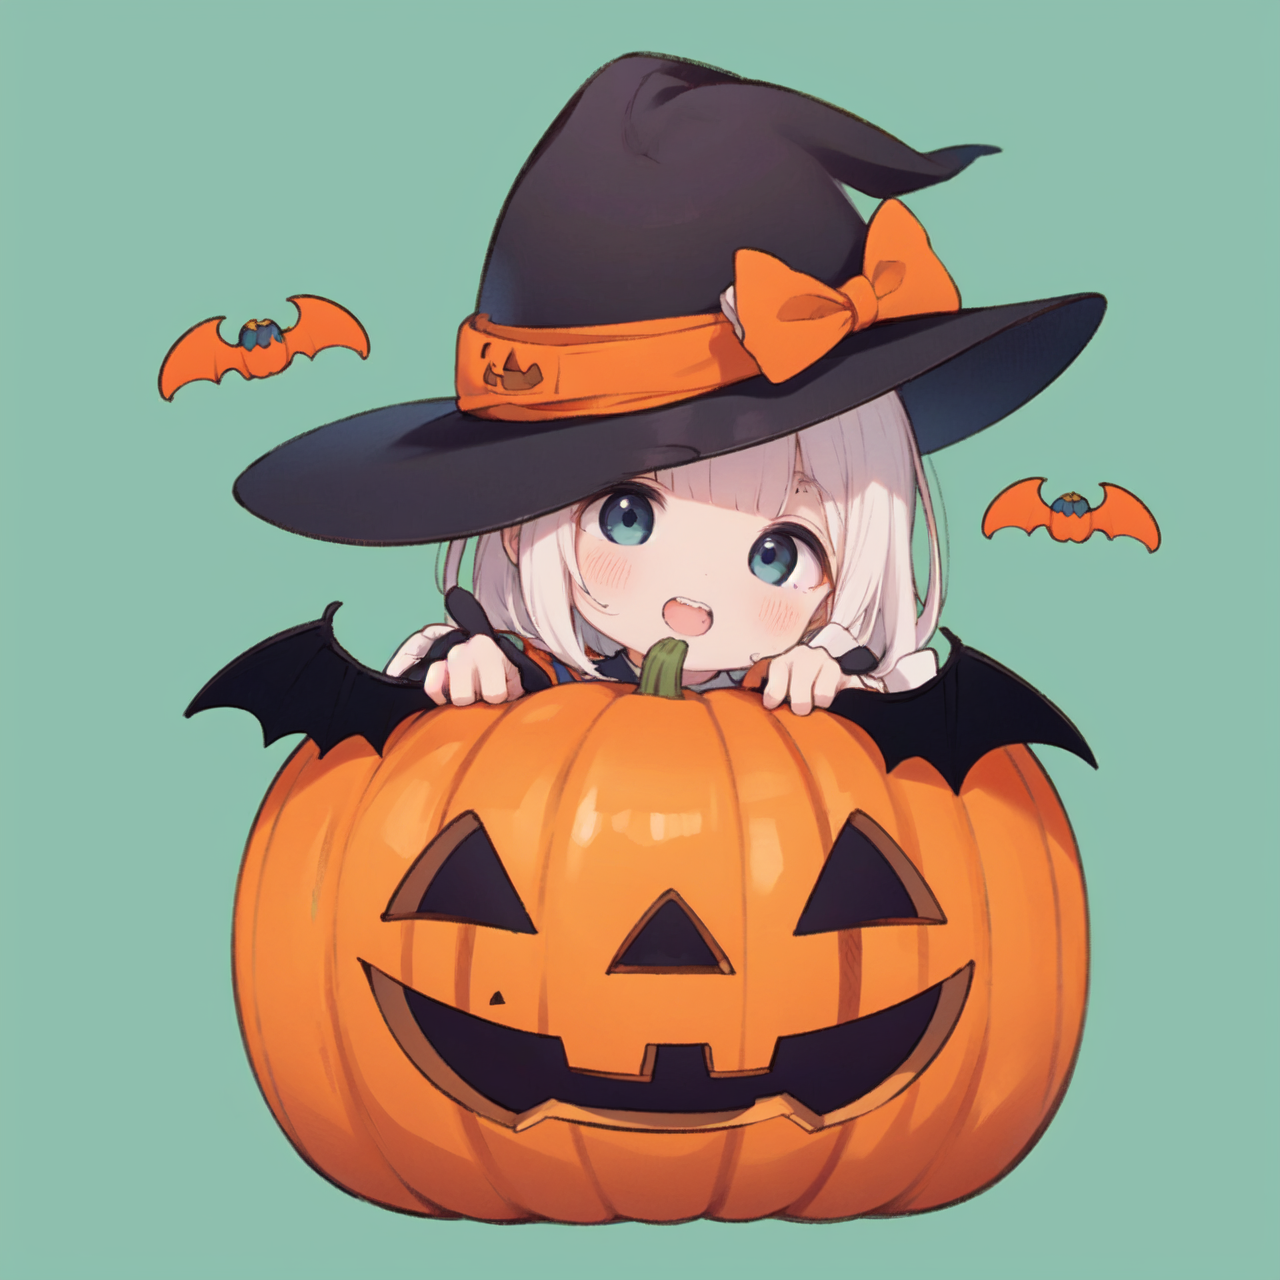 ID cards Animecon Halloween 2022 by Poki-art on DeviantArt